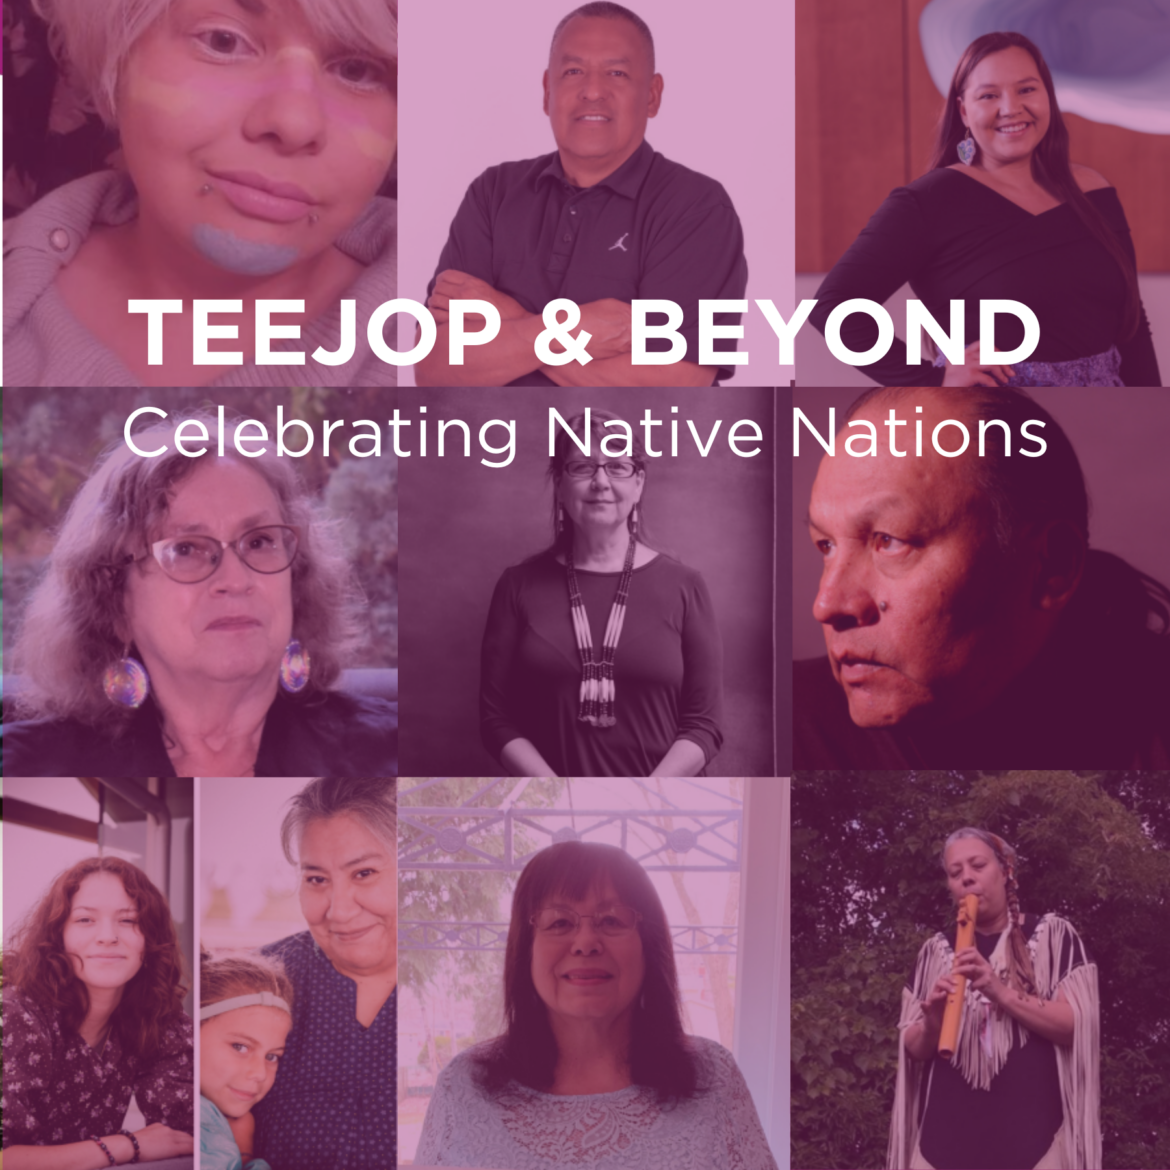 Madison indigenous community leaders shine in “Teejop & Beyond” presentation series